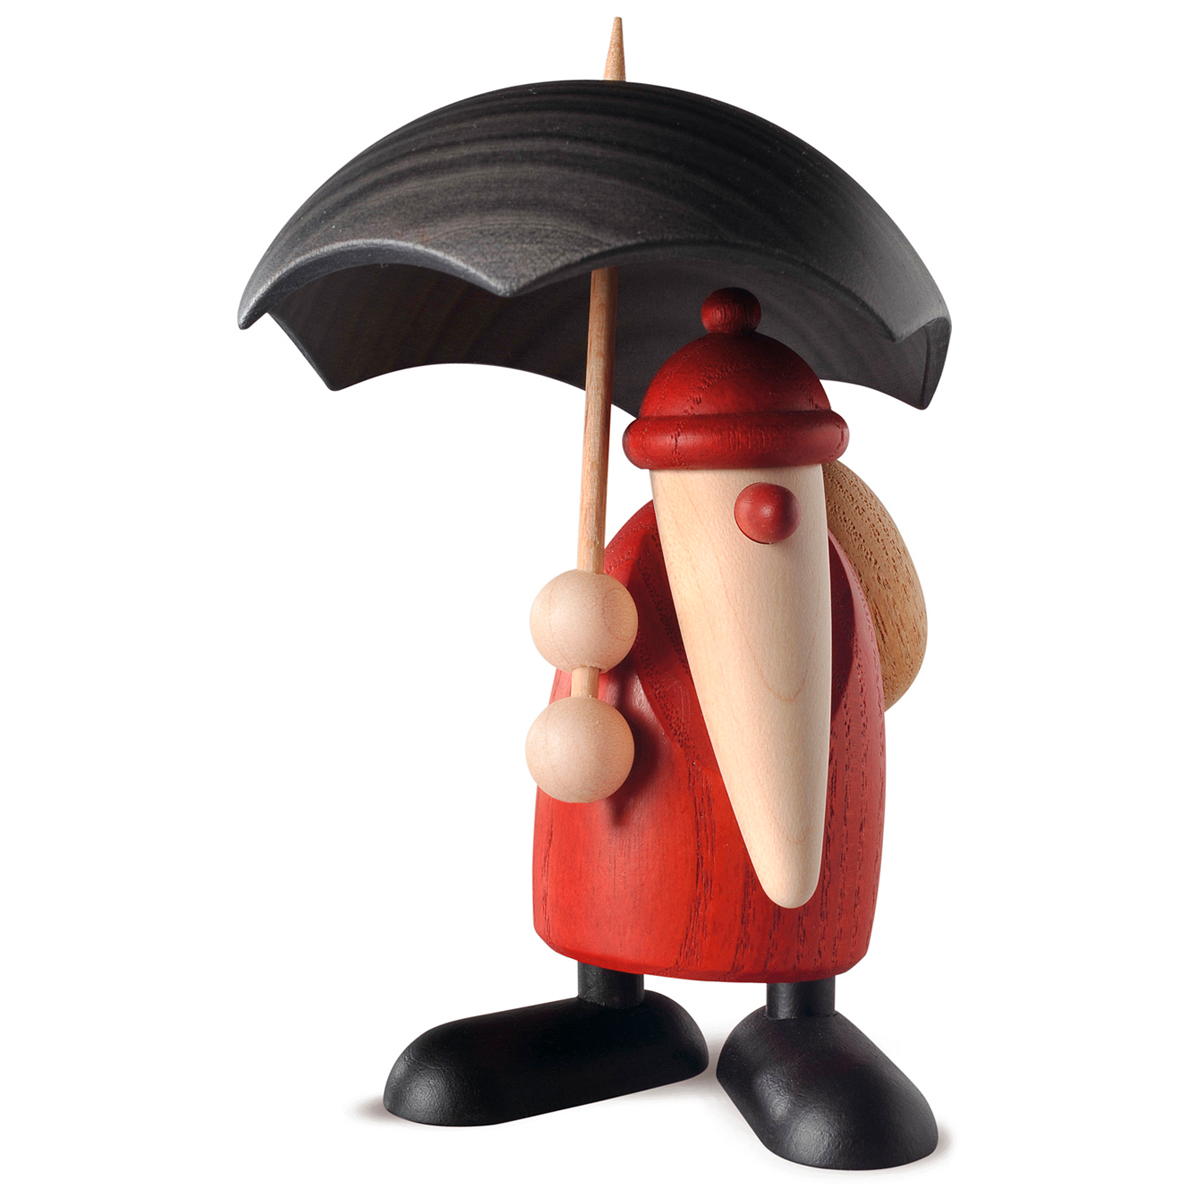  Santa Claus holding an umbrella, small